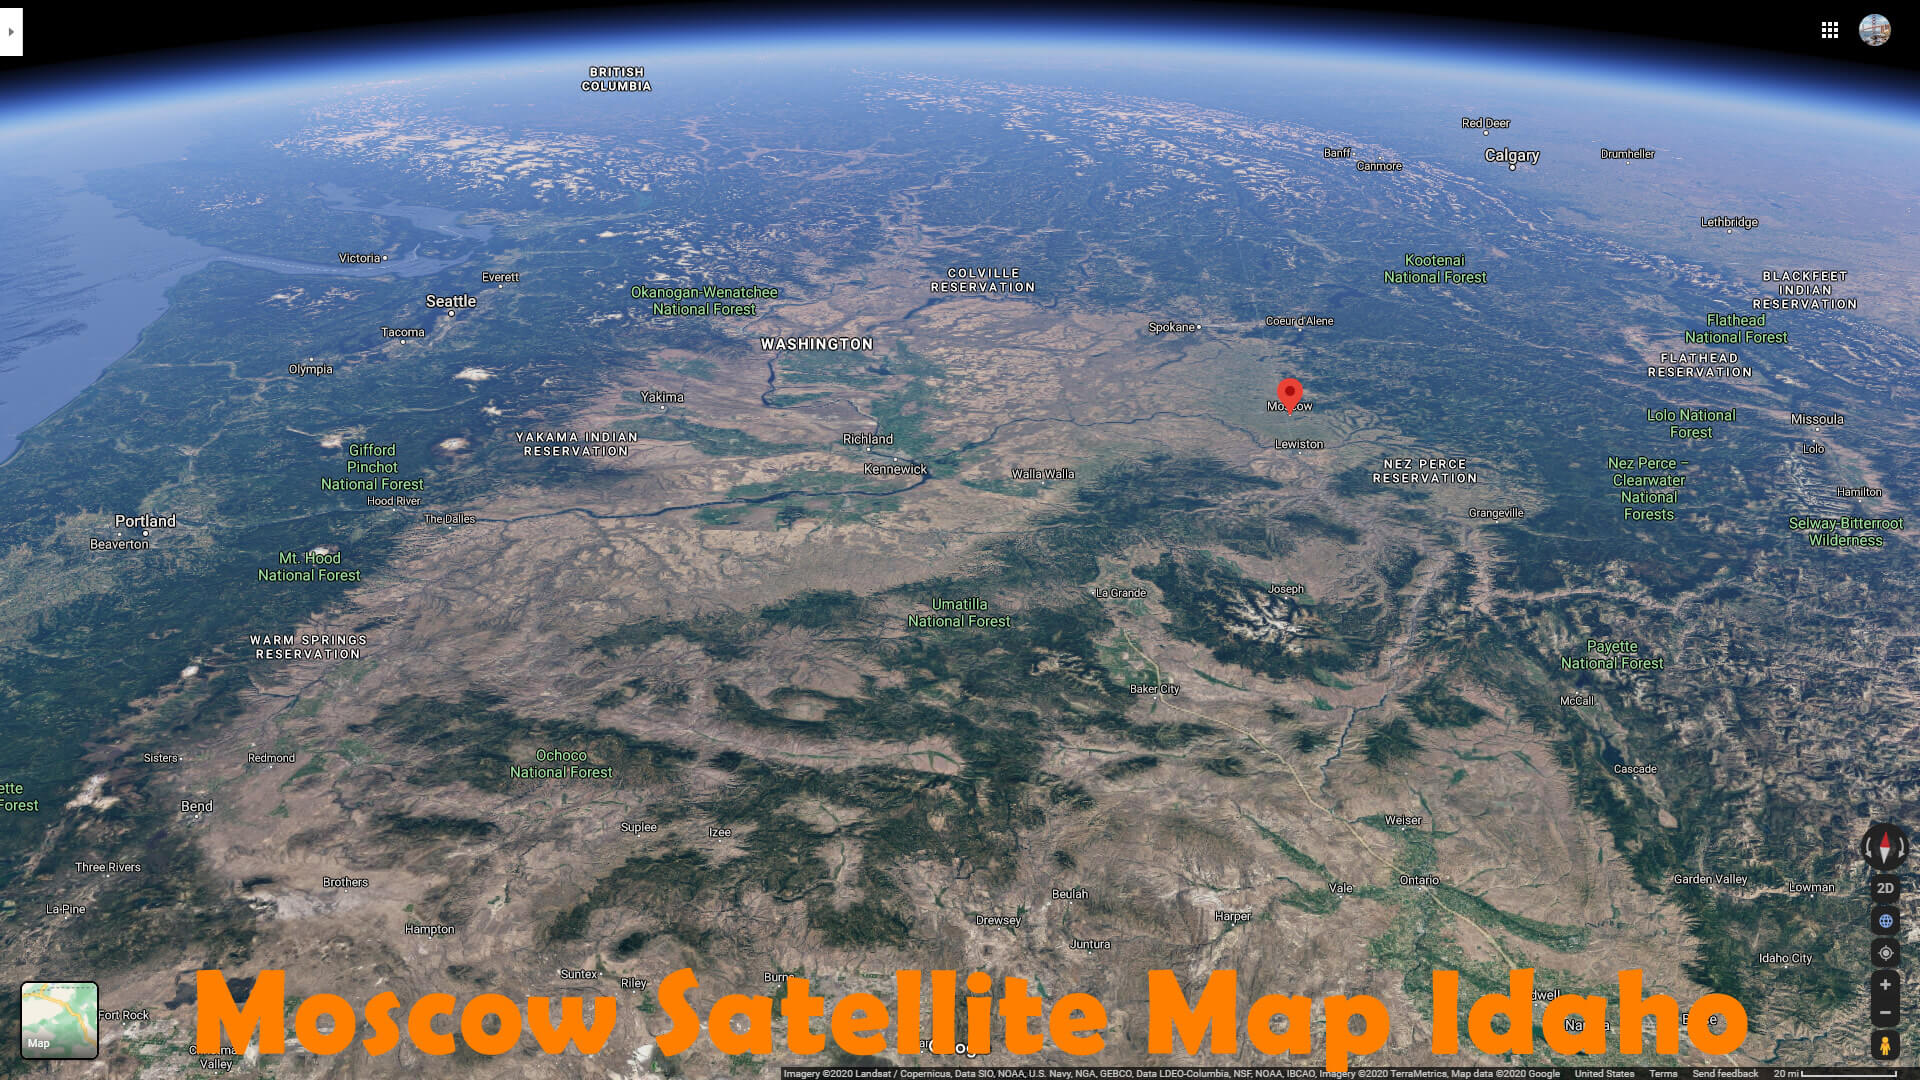 Moscow Satellite Map Idaho